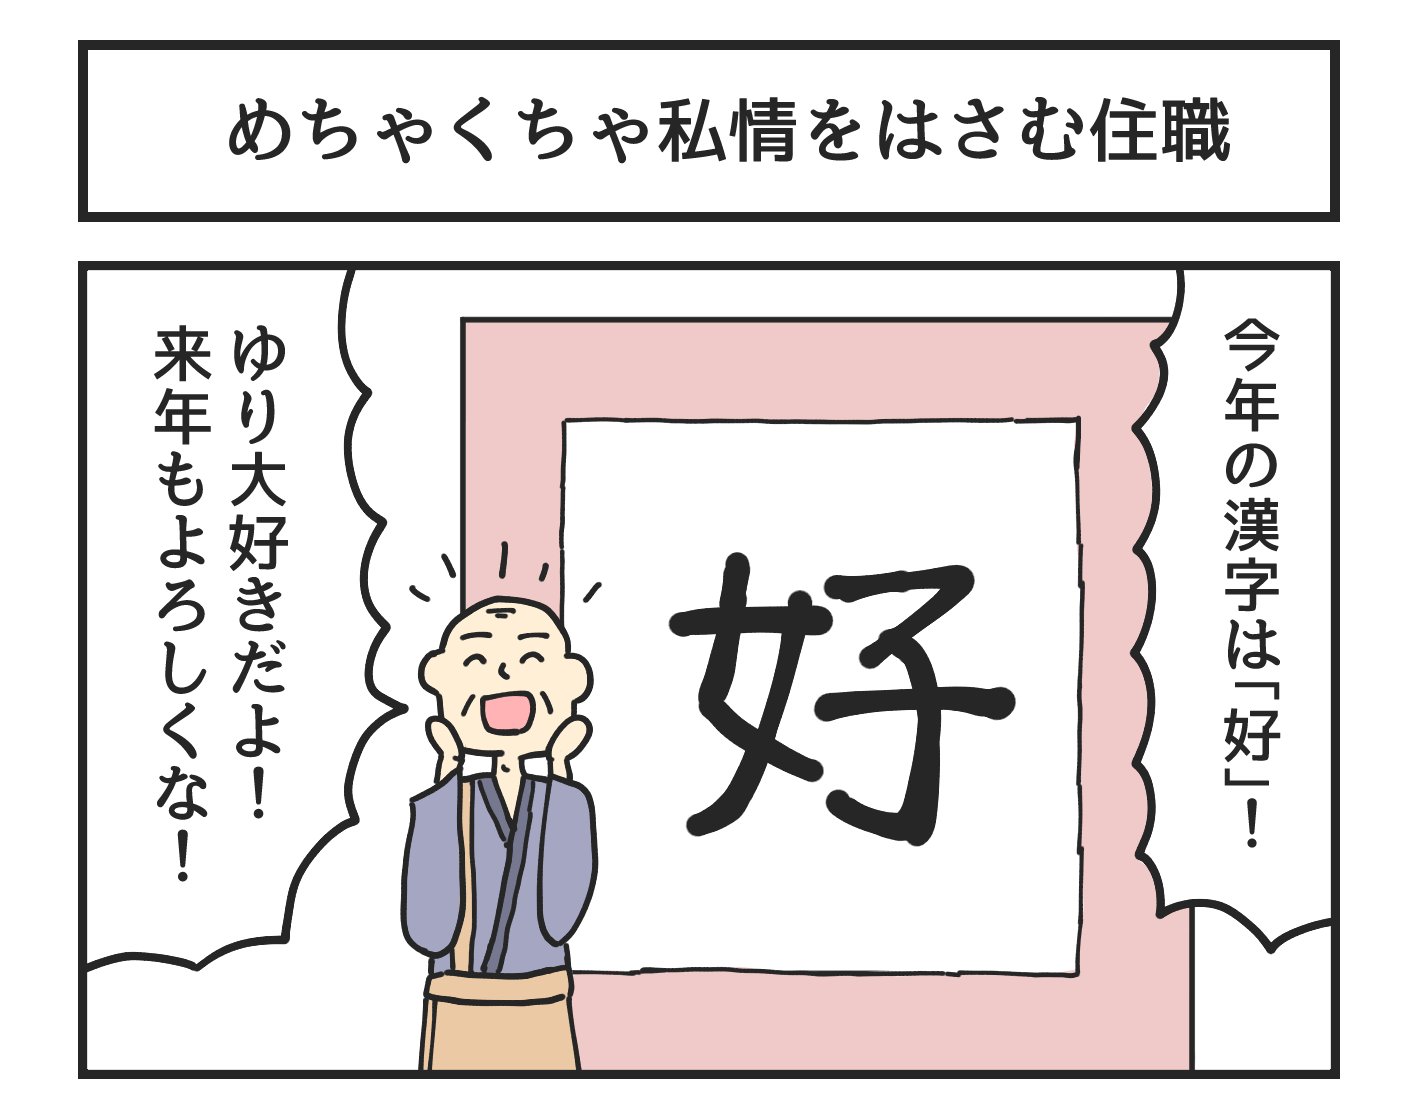 今年の漢字を書くときに めちゃくちゃ私情を挟んでくる住職 話題の画像プラス